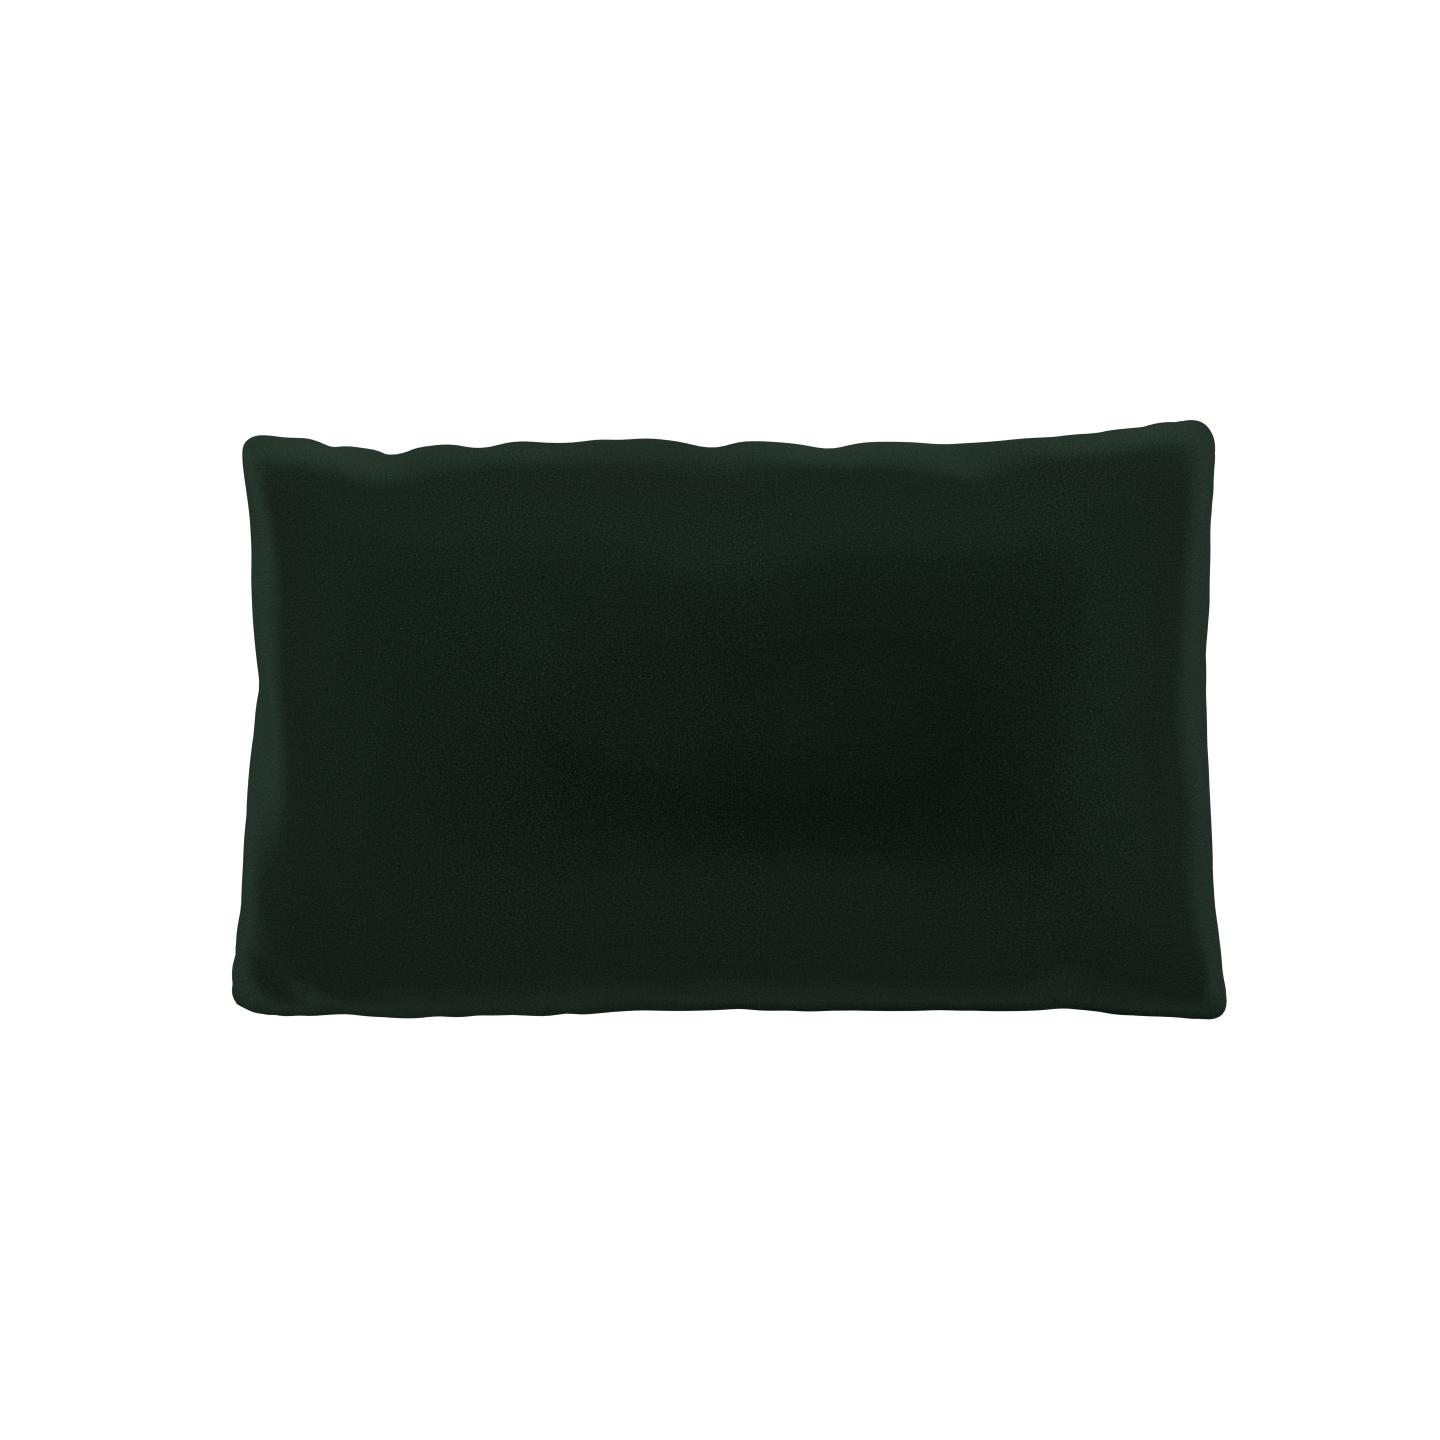 MYCS Coussin Vert Sapin - 30x50 cm - Housse en Velours. Coussin de canapé moelleux